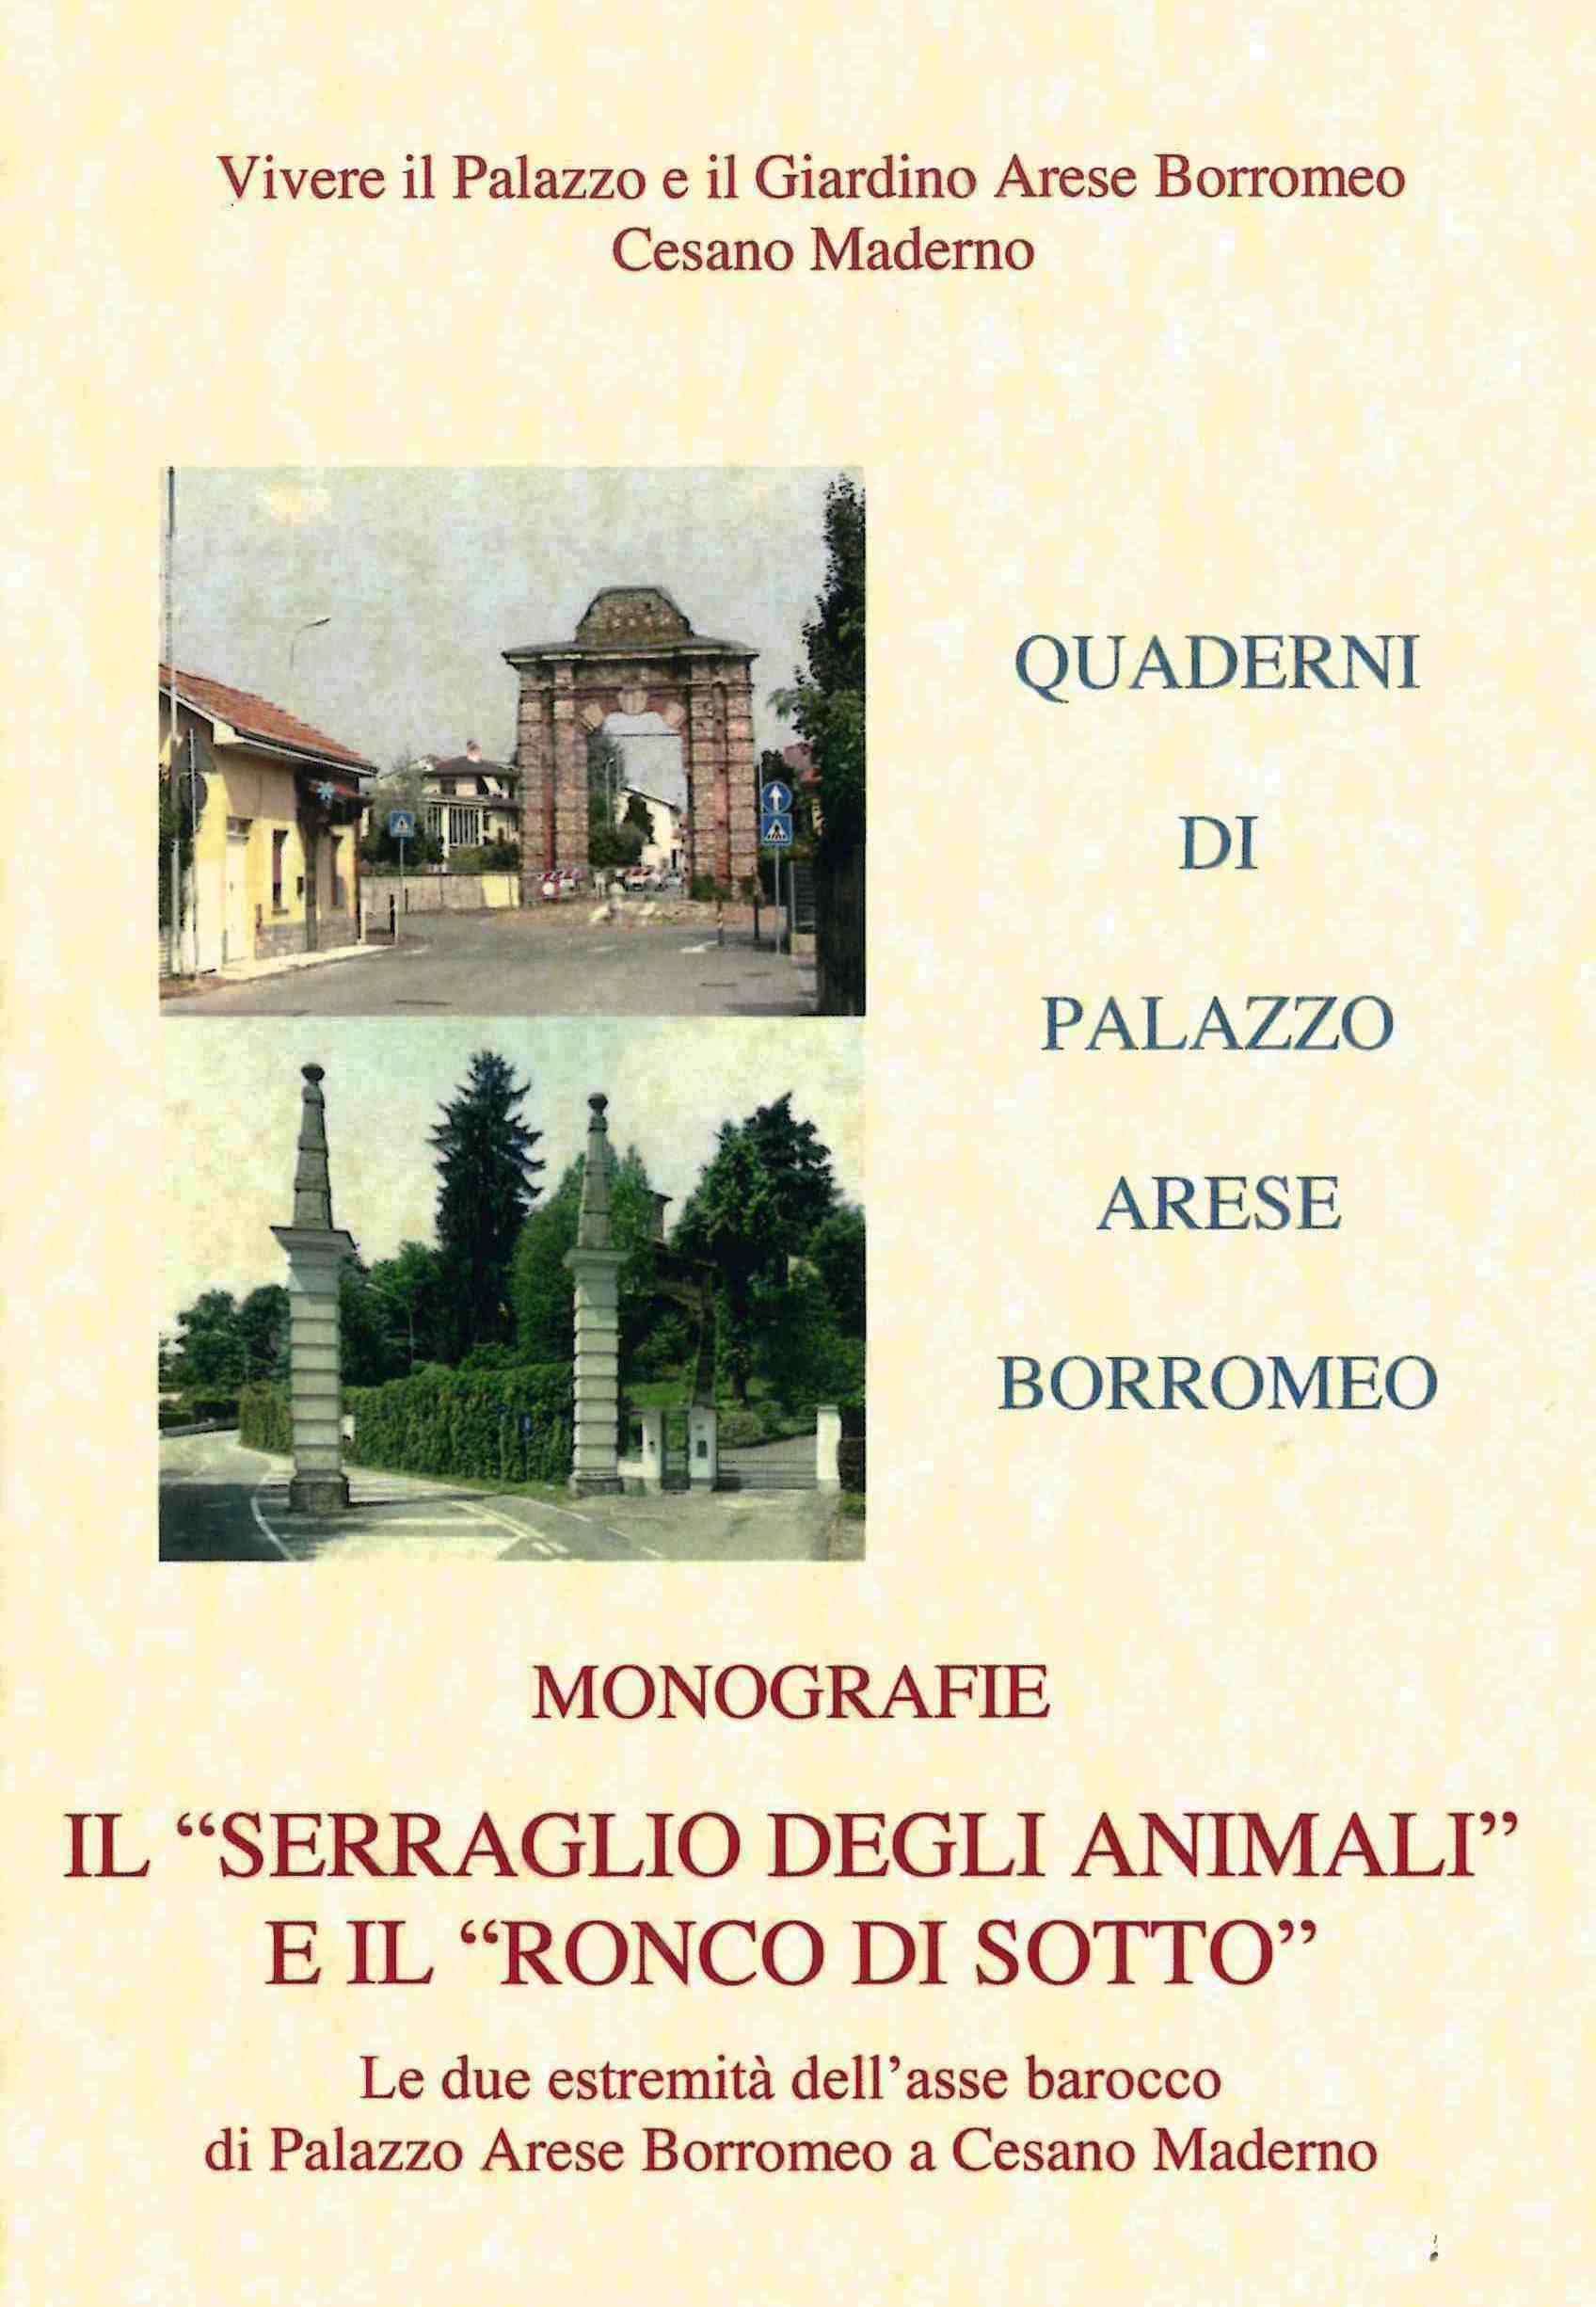 Il “Serraglio degli animali” e il “Ronco di sotto”: le due estremità dell’asse barocco di Palazzo Arese Borromeo a Cesano Maderno